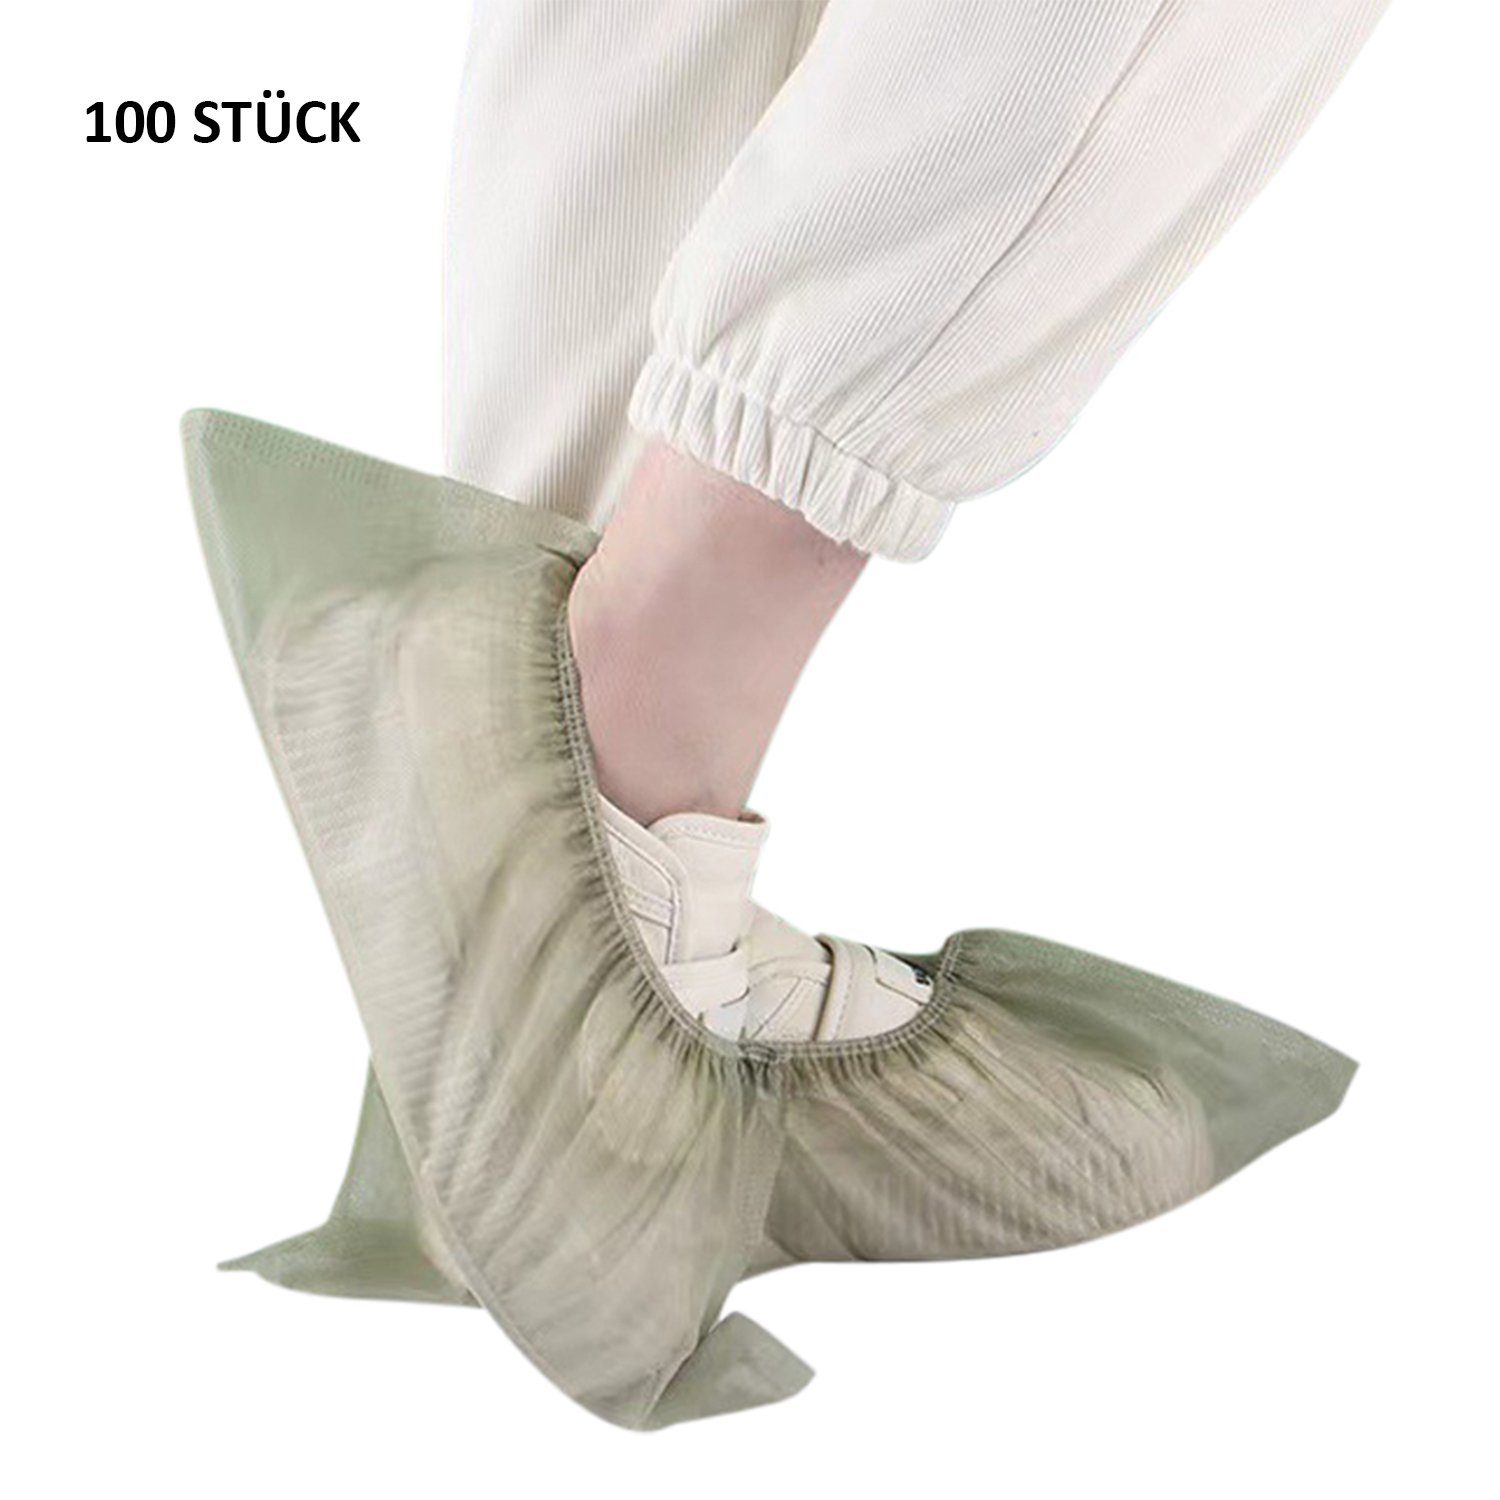 Schuhüberzieher Daisred Stück Grün 100 Einweg-Stiefel rutschfest Schuhüberzieher hygienische